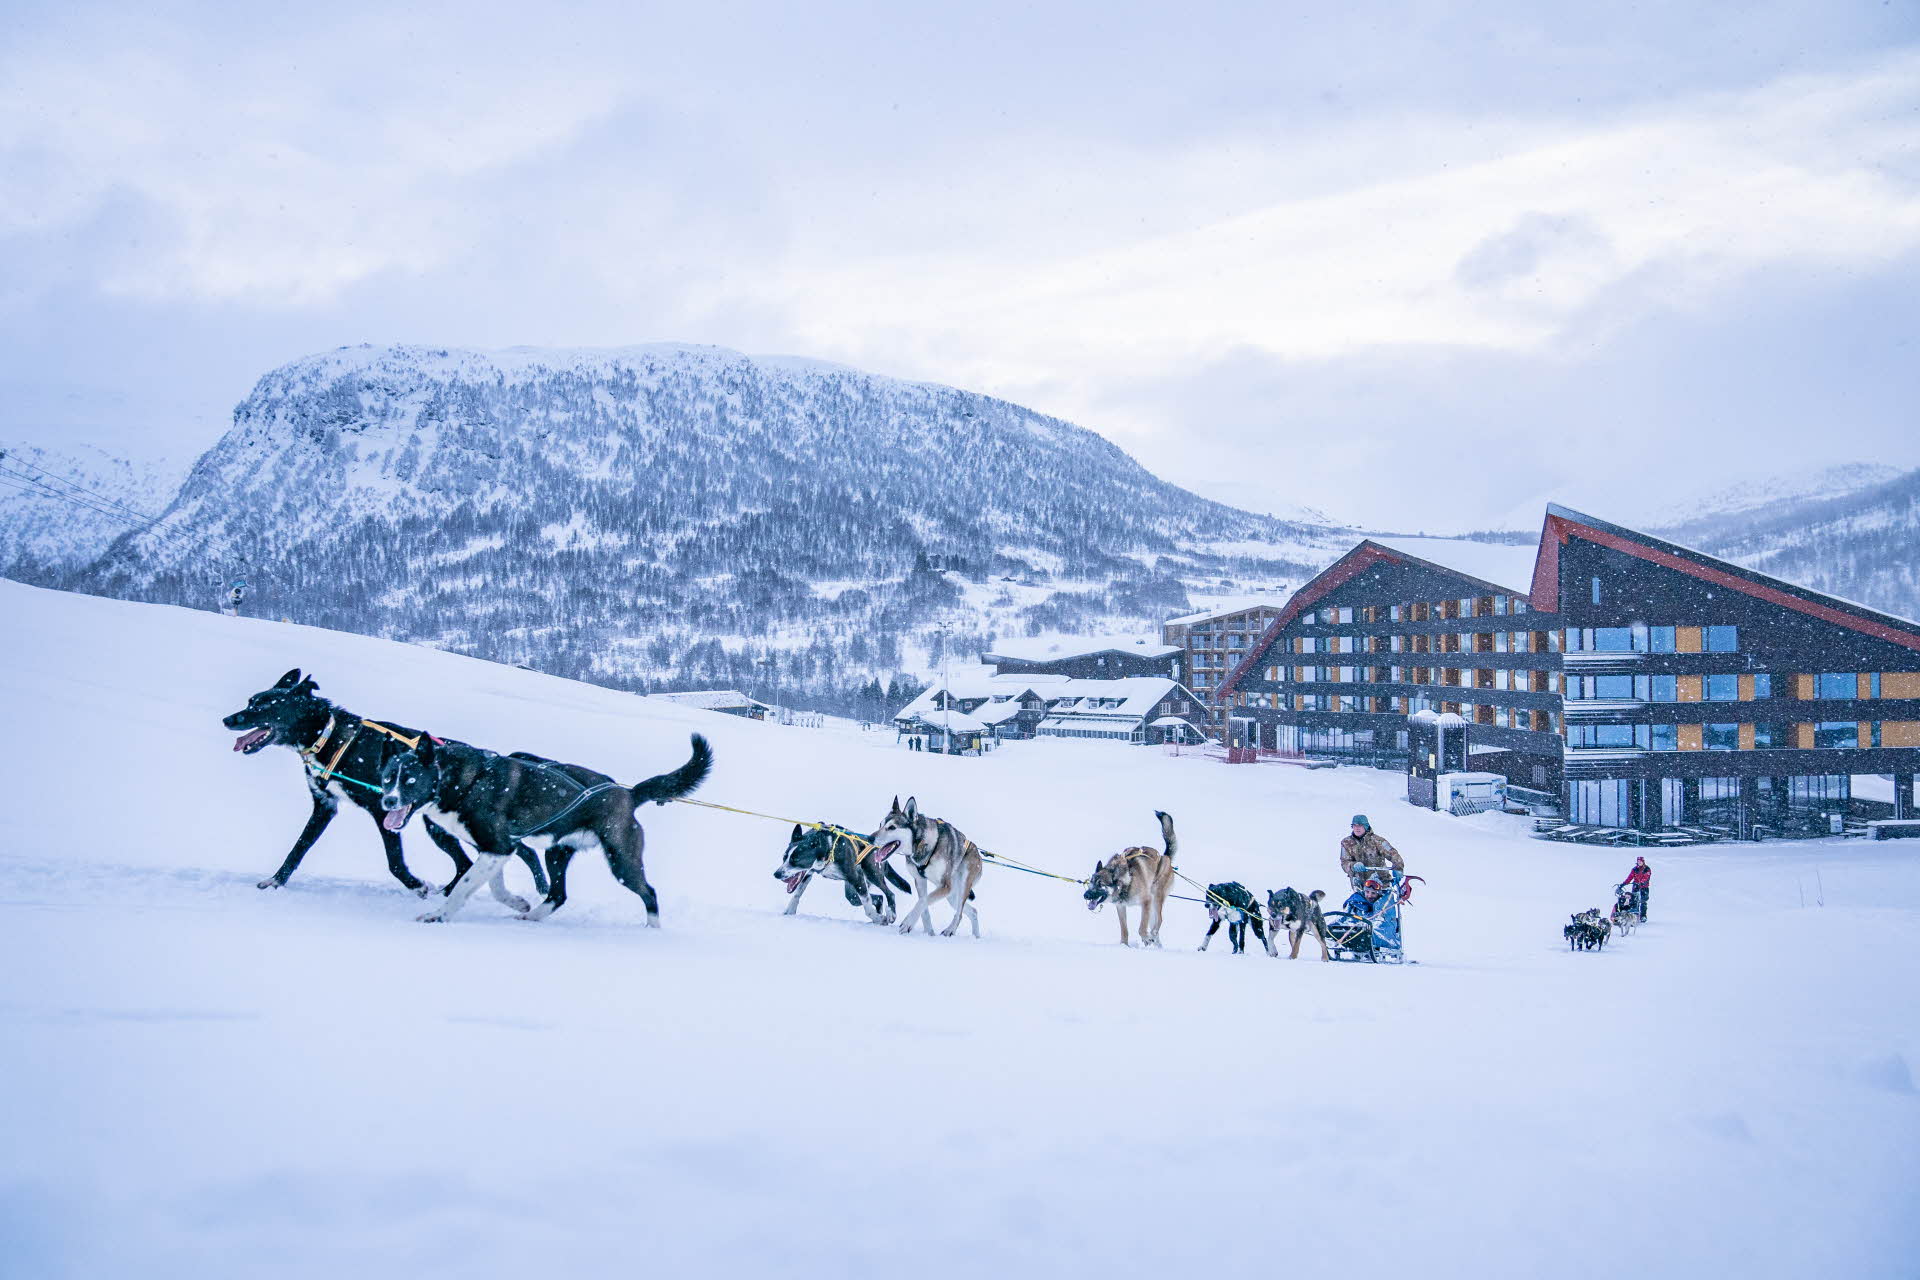 哈士奇拉着雪橇从迈克达林 (Myrkdalen) 往山上跑去，背景中是白雪覆盖的山脉